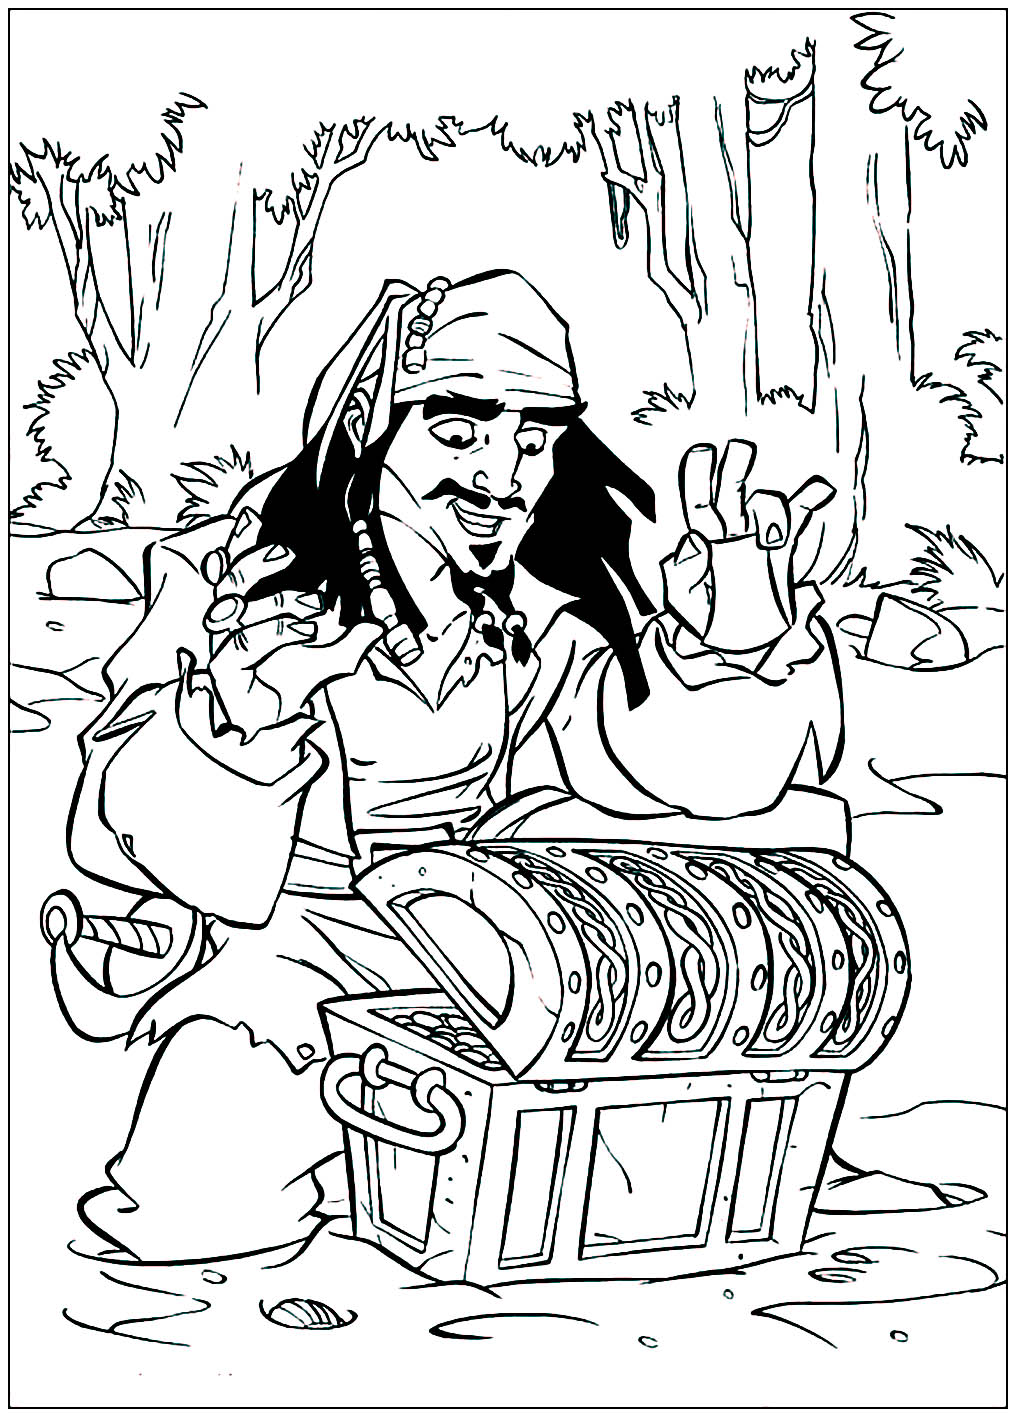 Colorea este dibujo a tiempo para recuperar el tesoro antes que Jack Sparrow.